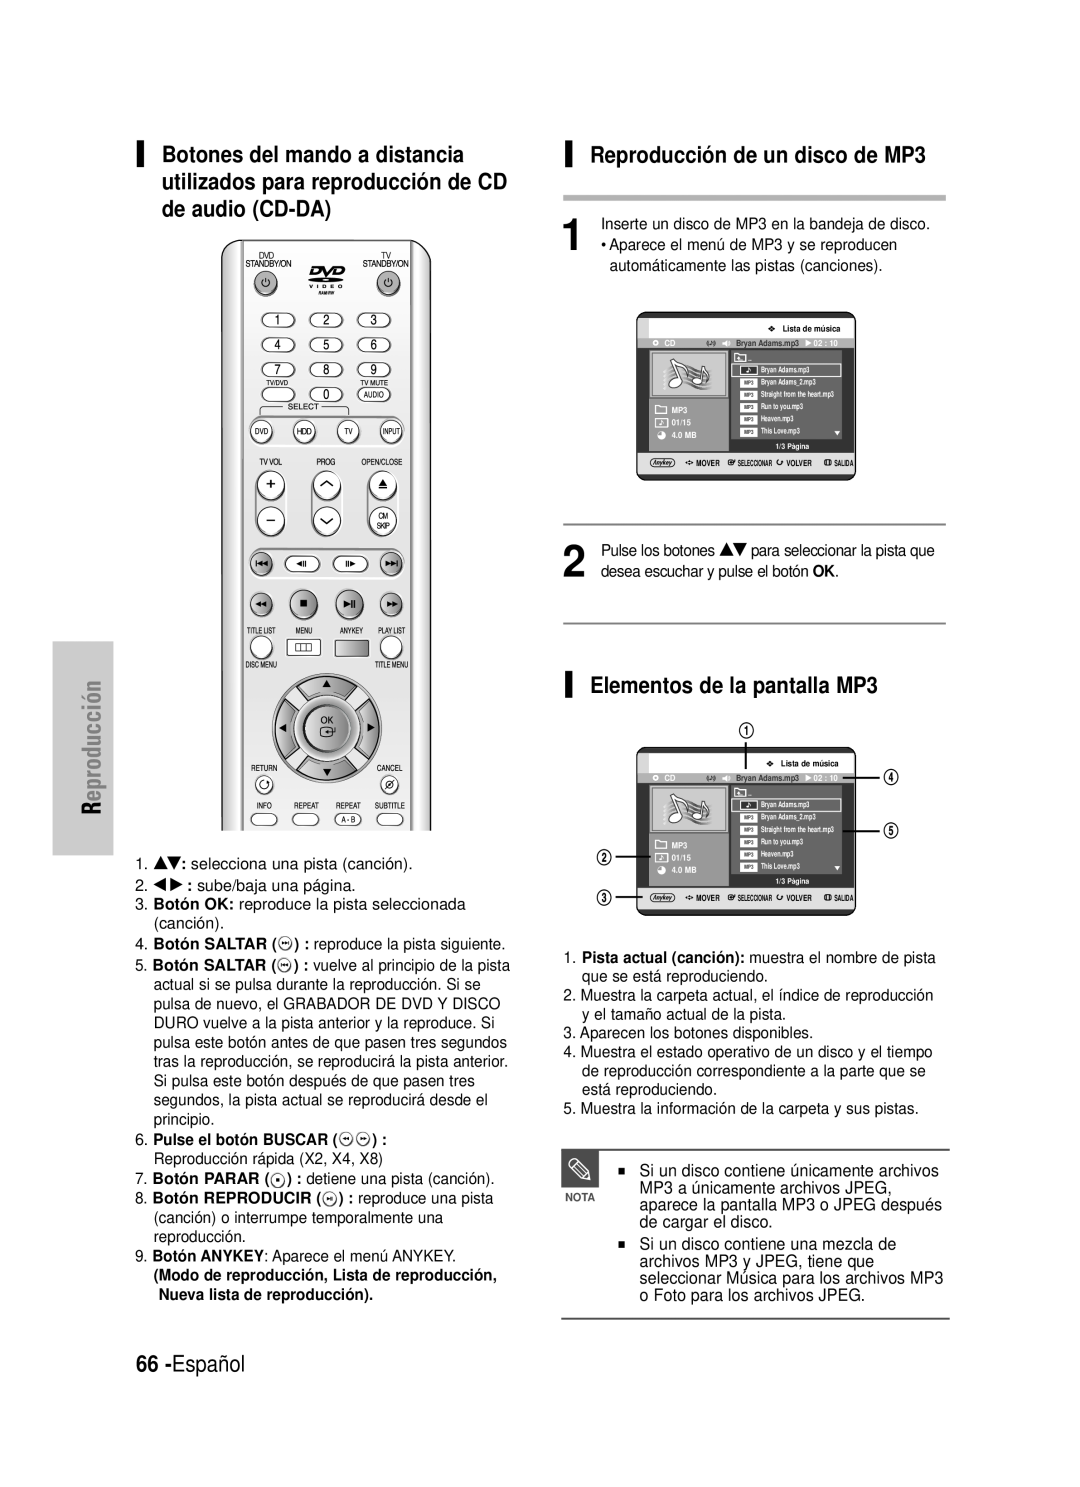 Samsung DVD-HR725/SED manual Reproducción de un disco de MP3, Español, Elementos de la pantalla MP3, de cargar el disco 